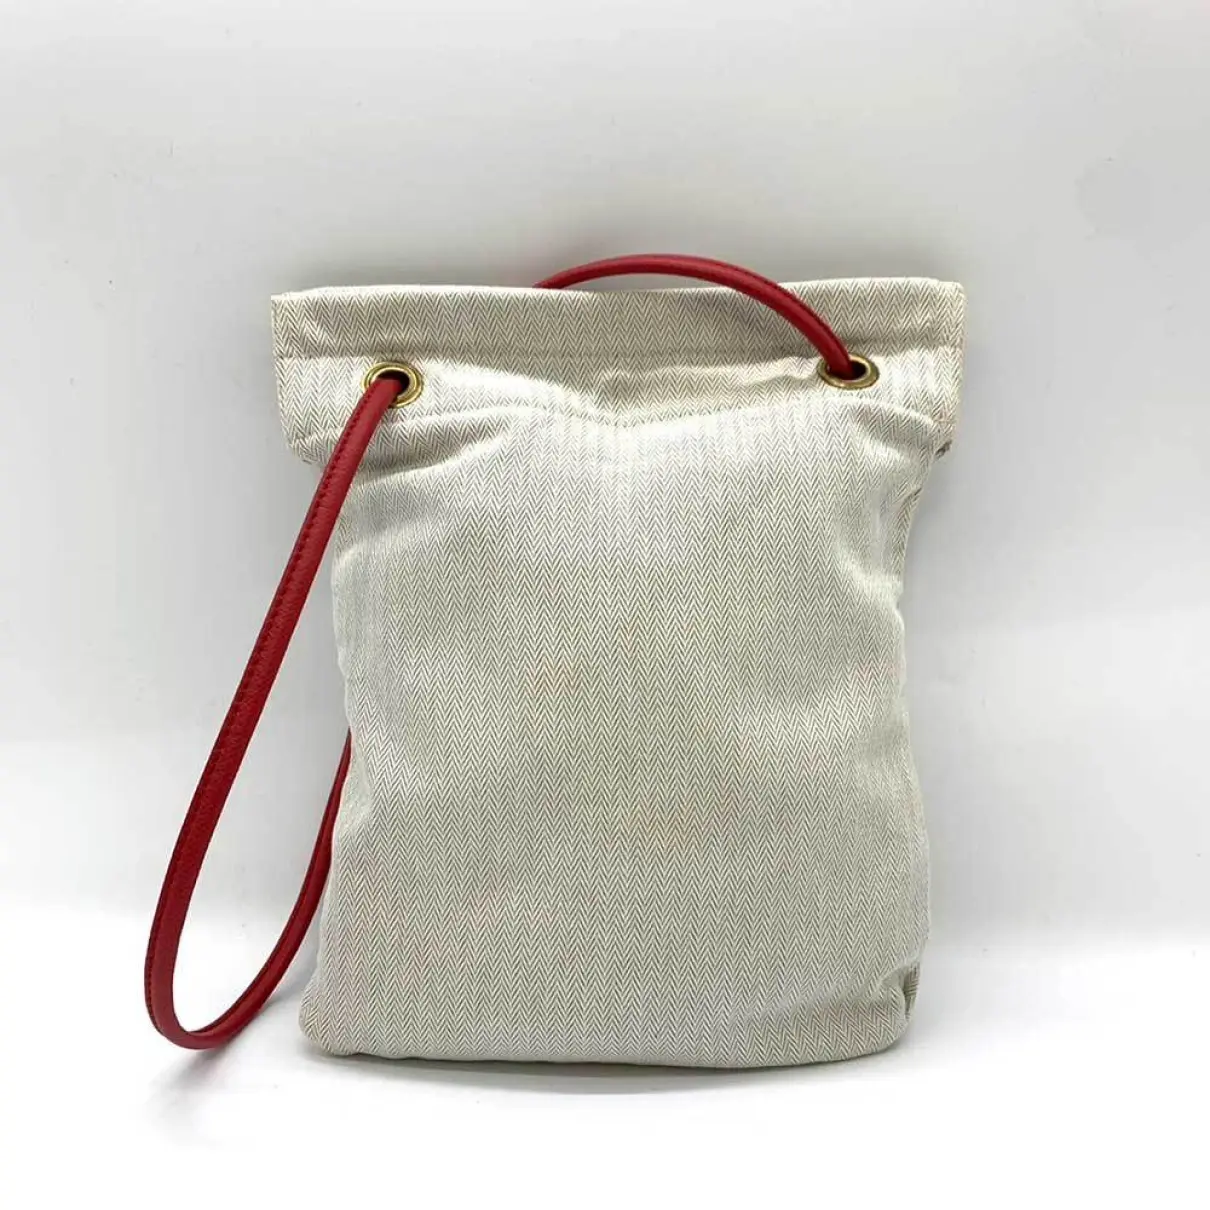 Buy Hermès Aline cloth handbag online